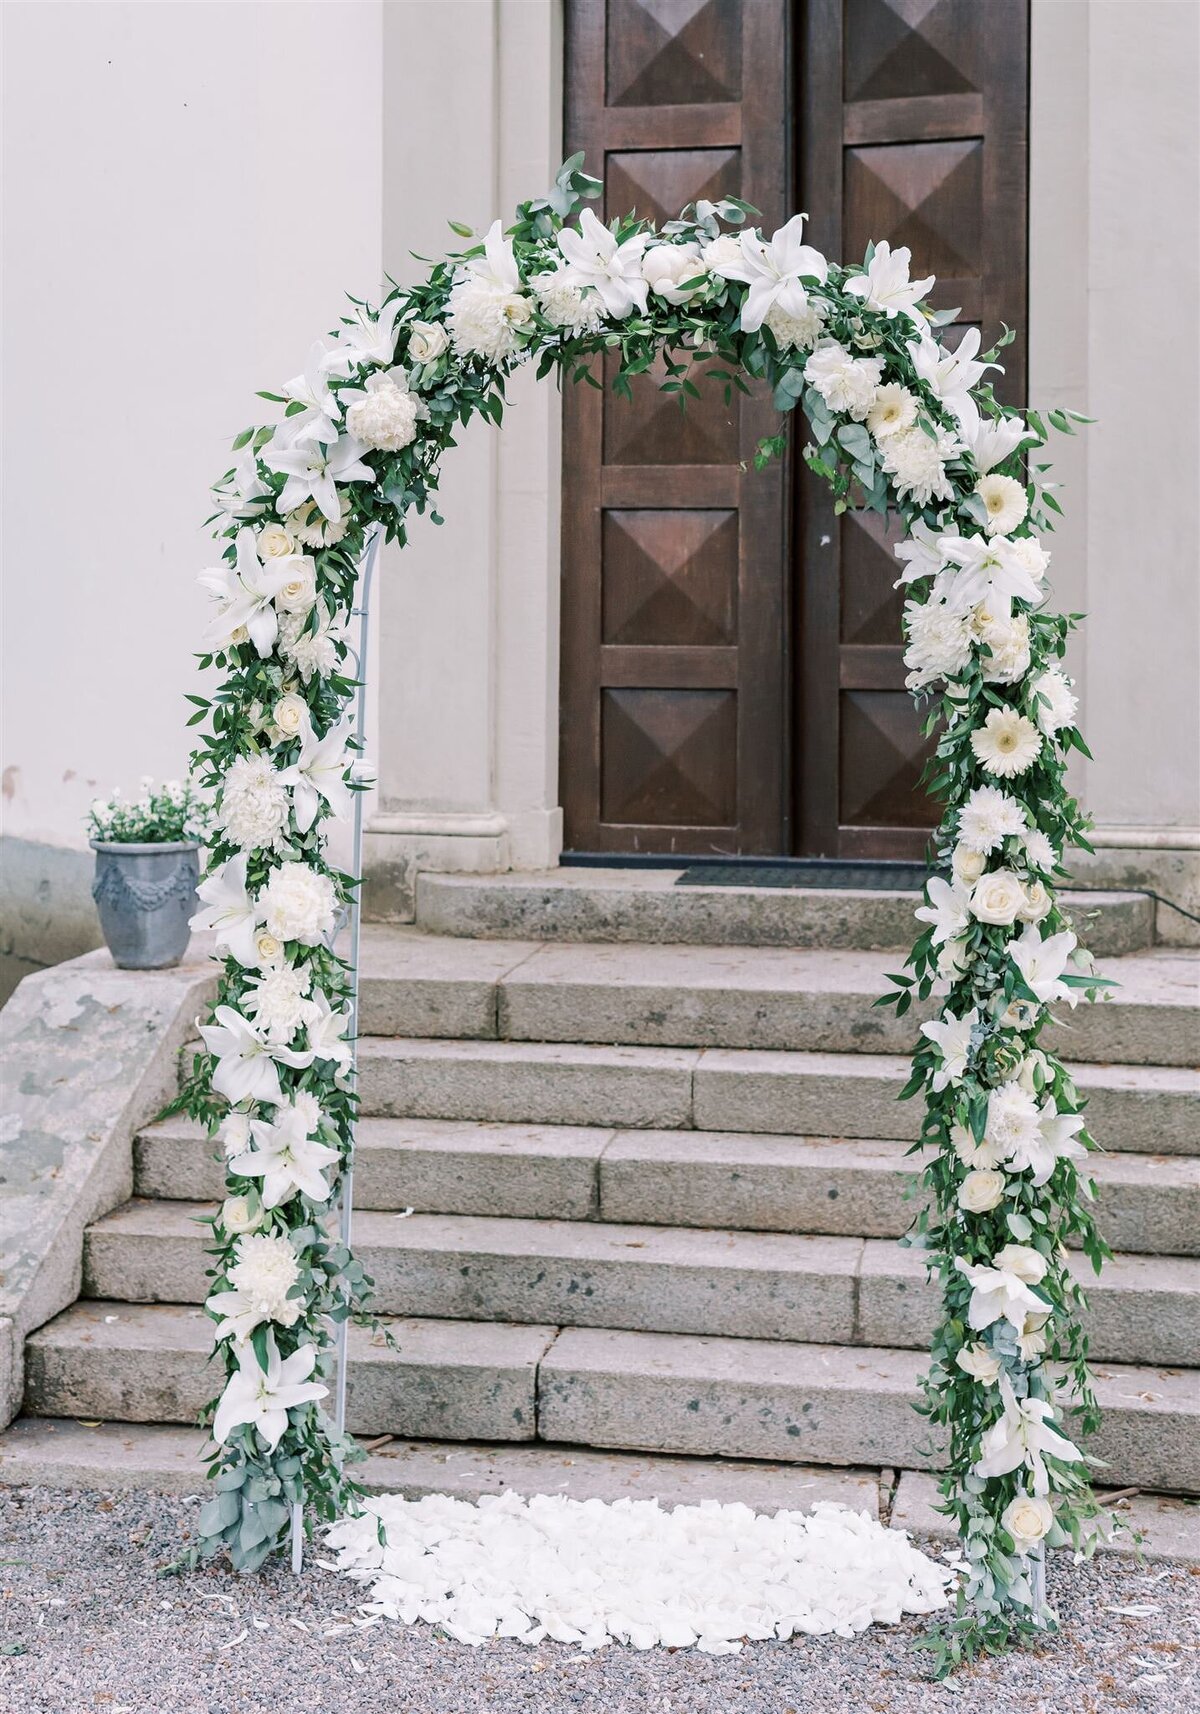 Destination Wedding Photographer Anna Lundgren - helloalora Rånäs Slott chateau wedding in Sweden outdoor ceremony wedding flower arch